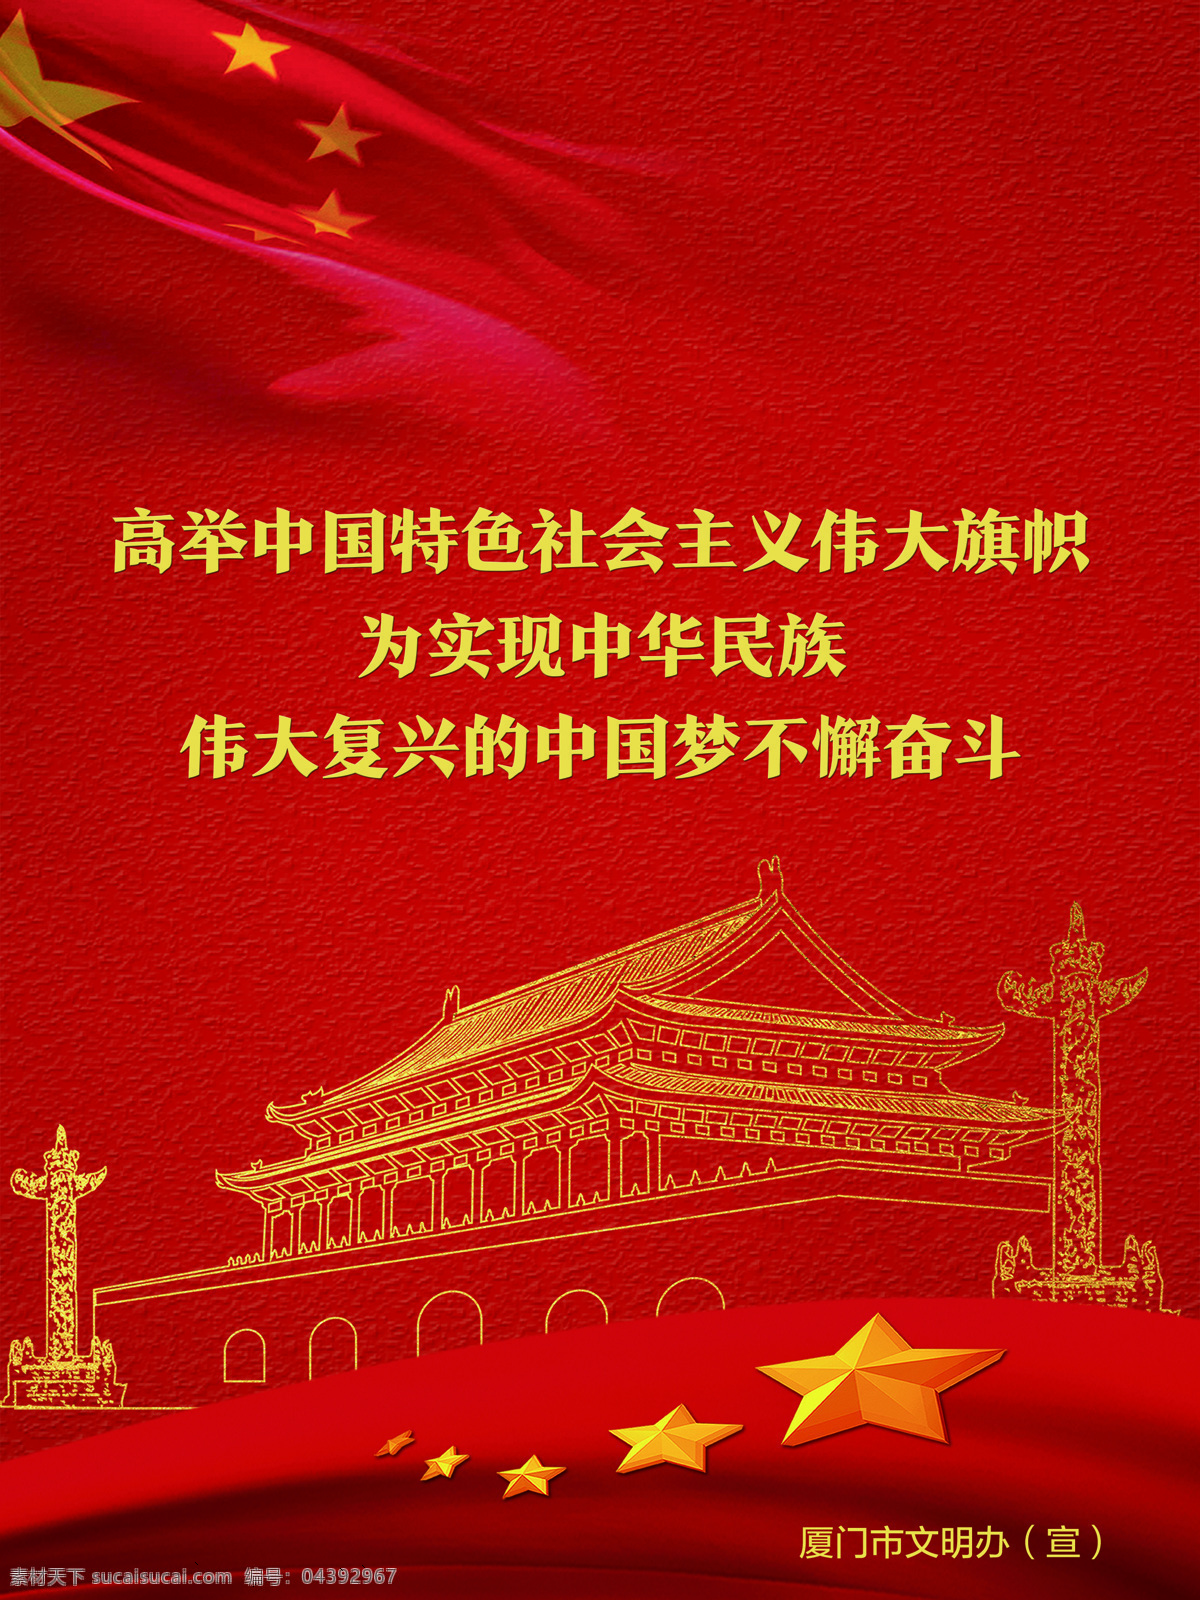 高举 中国 特色 社会主义 伟大 旗帜 讲文明 树新风 公益广告 公益 广告